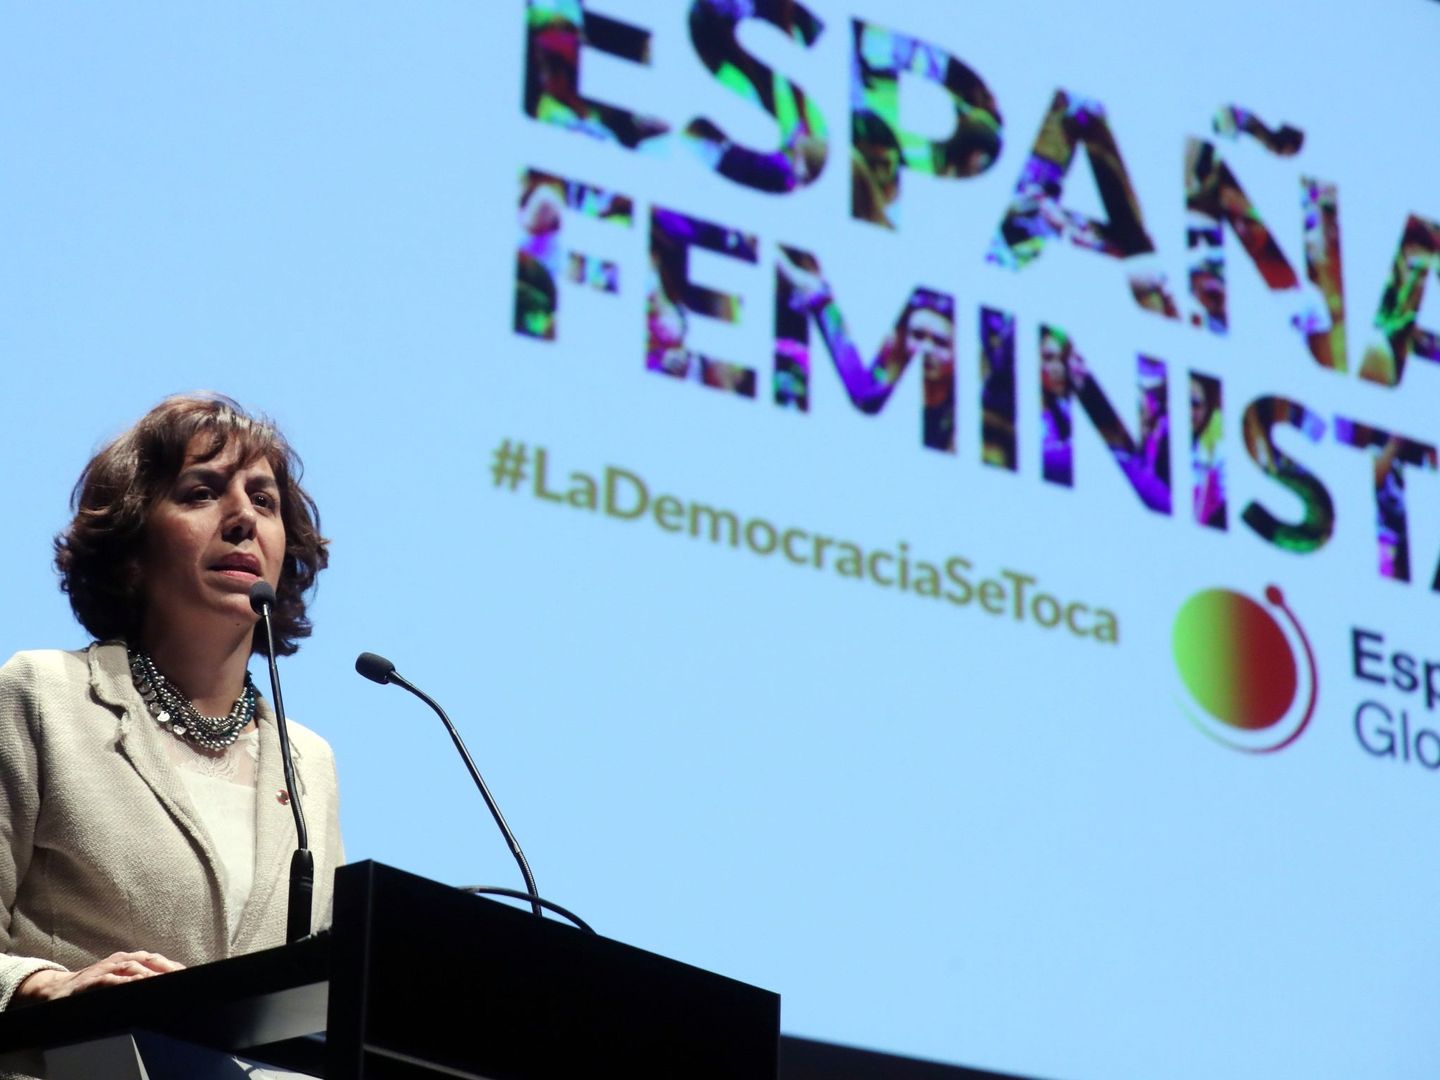 La secretaria de Estado de España Global, Irene Lozano, el pasado 26 de noviembre en Madrid. (EFE)